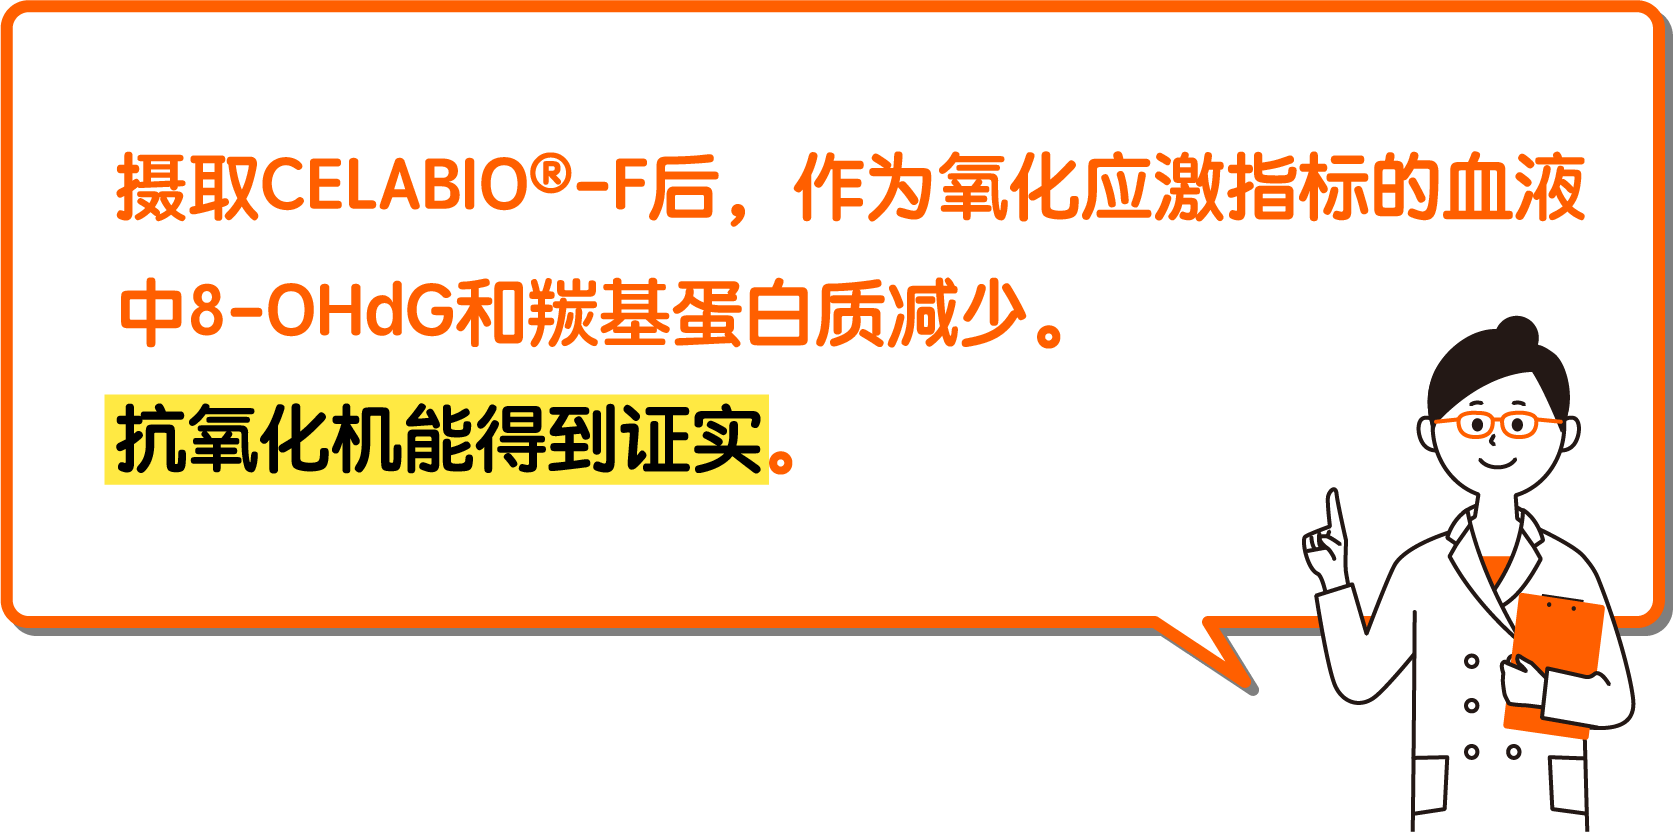 摄取CELABIO-F后，作为氧化应激指标的血液中8-OHdG和羰基蛋白质减少。抗氧化机能得到证实。